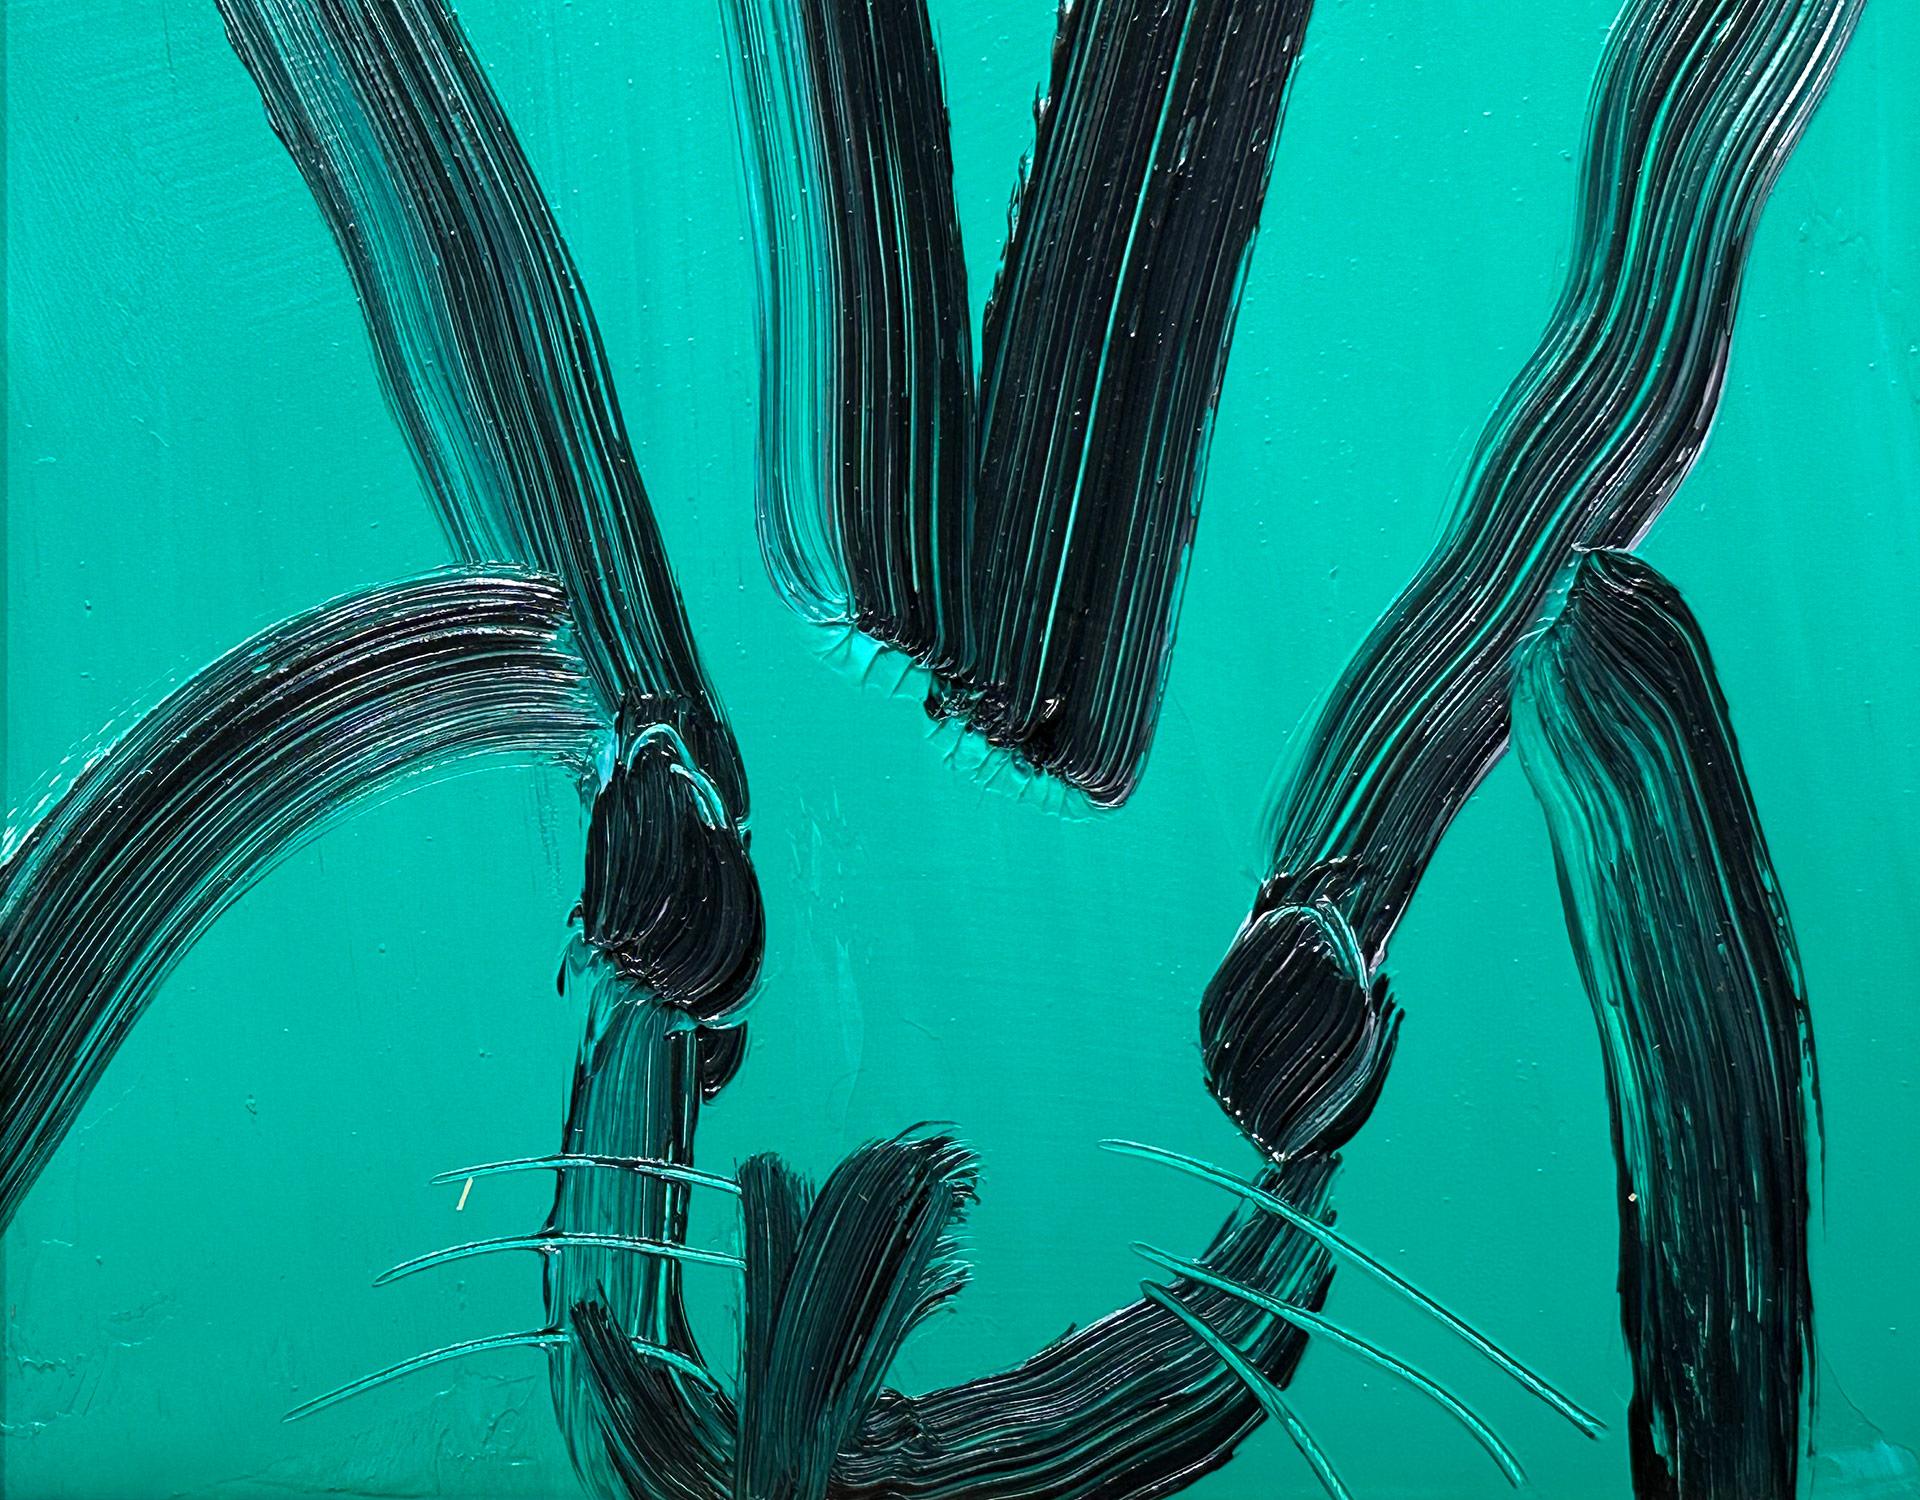 Eine wunderbare Komposition eines der ikonischsten Themen von Slonem, nämlich Hasen. Dieses Werk zeigt eine gestische Figur eines schwarzen Hasen auf smaragdgrünem Hintergrund mit dickem Farbauftrag. Inspiriert von der Natur und einer echten Liebe